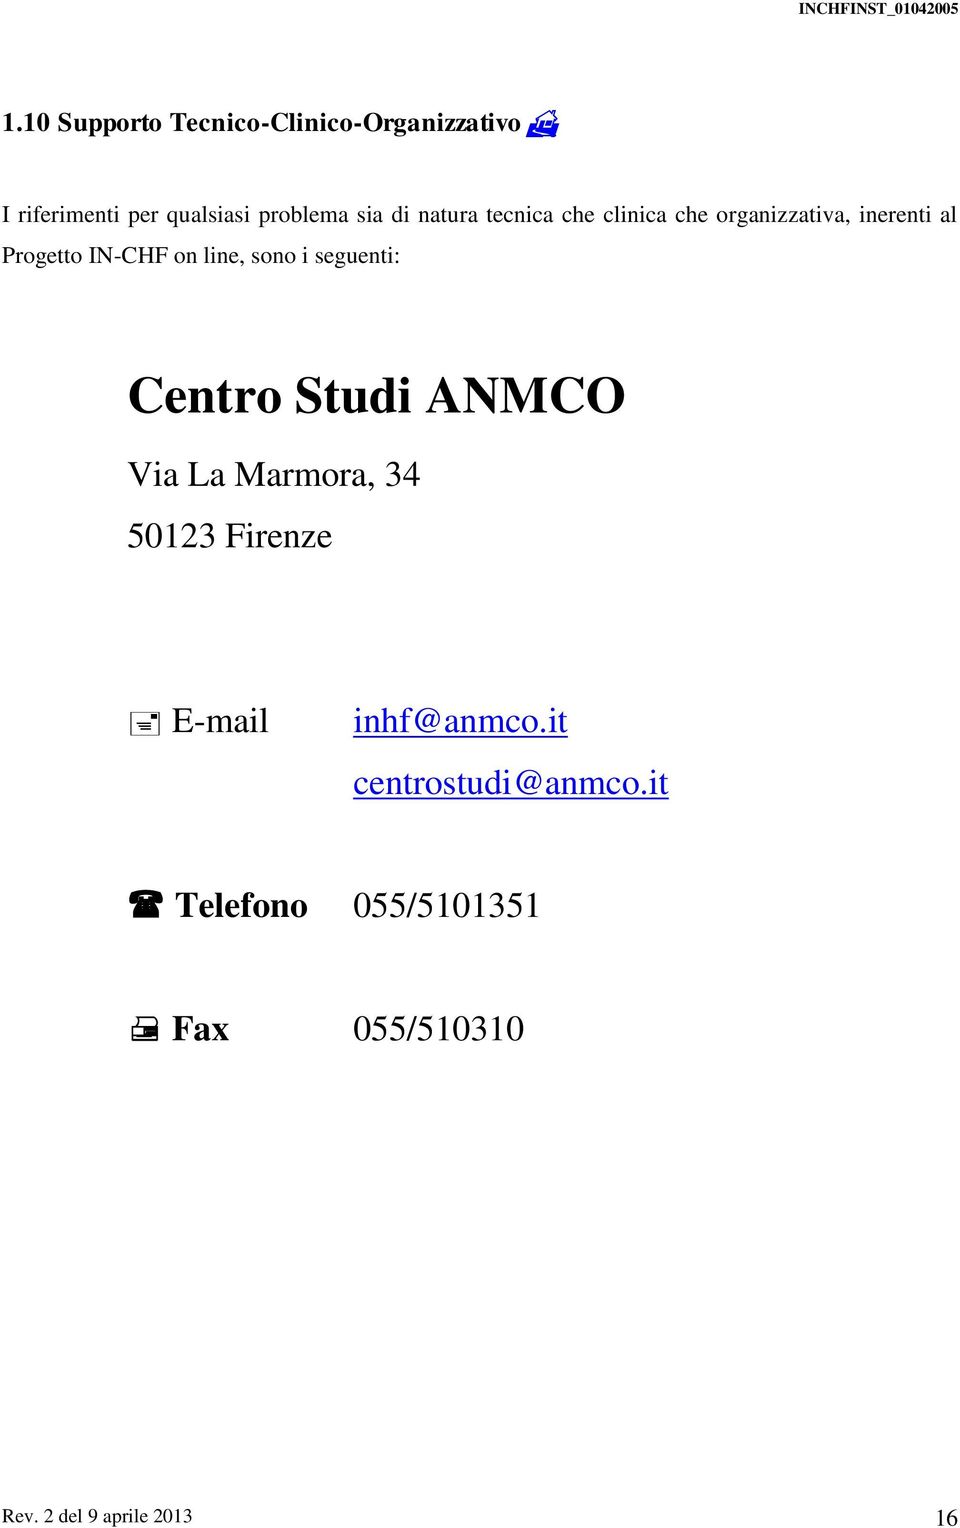 sono i seguenti: Centro Studi ANMCO Via La Marmora, 34 50123 Firenze E-mail inhf@anmco.